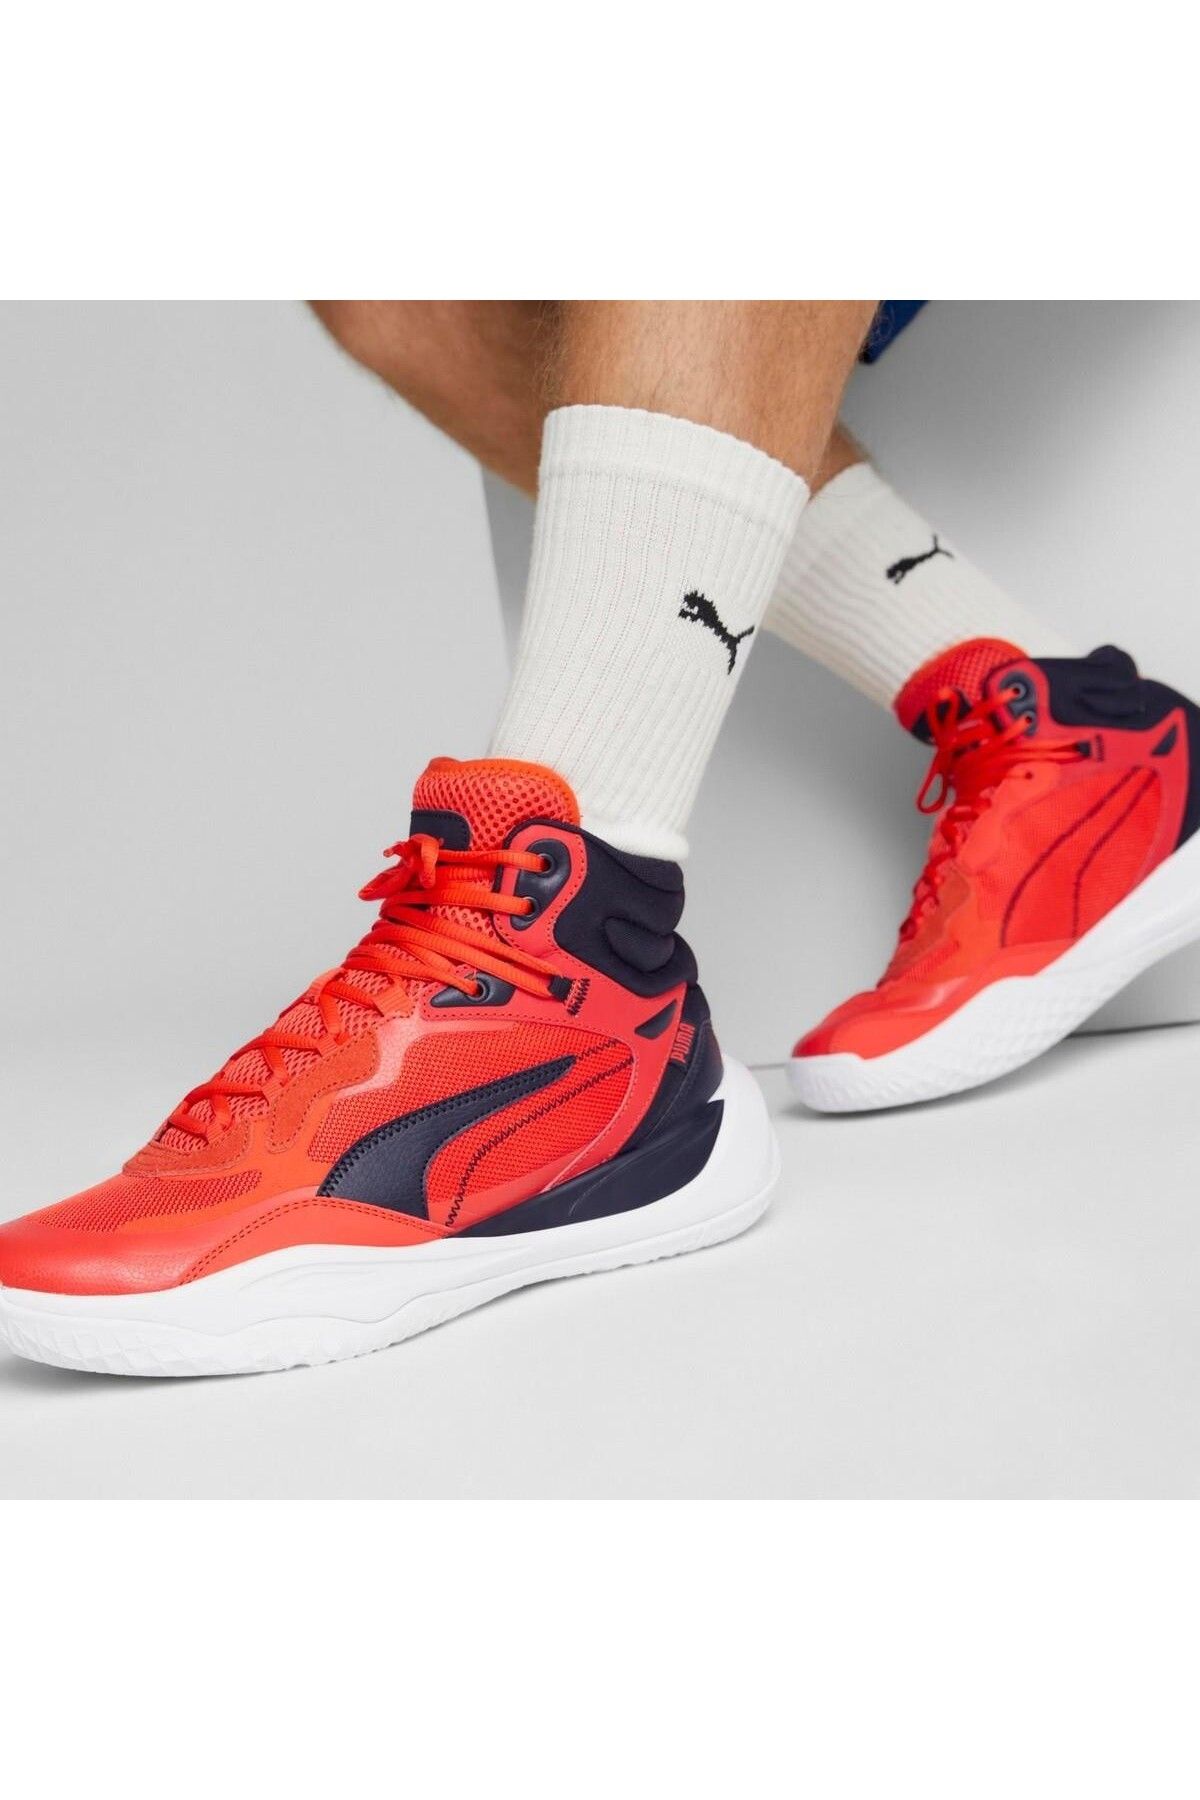 Puma Playmaker Pro Mid Erkek Kırmızı Basketbol Ayakkabısı